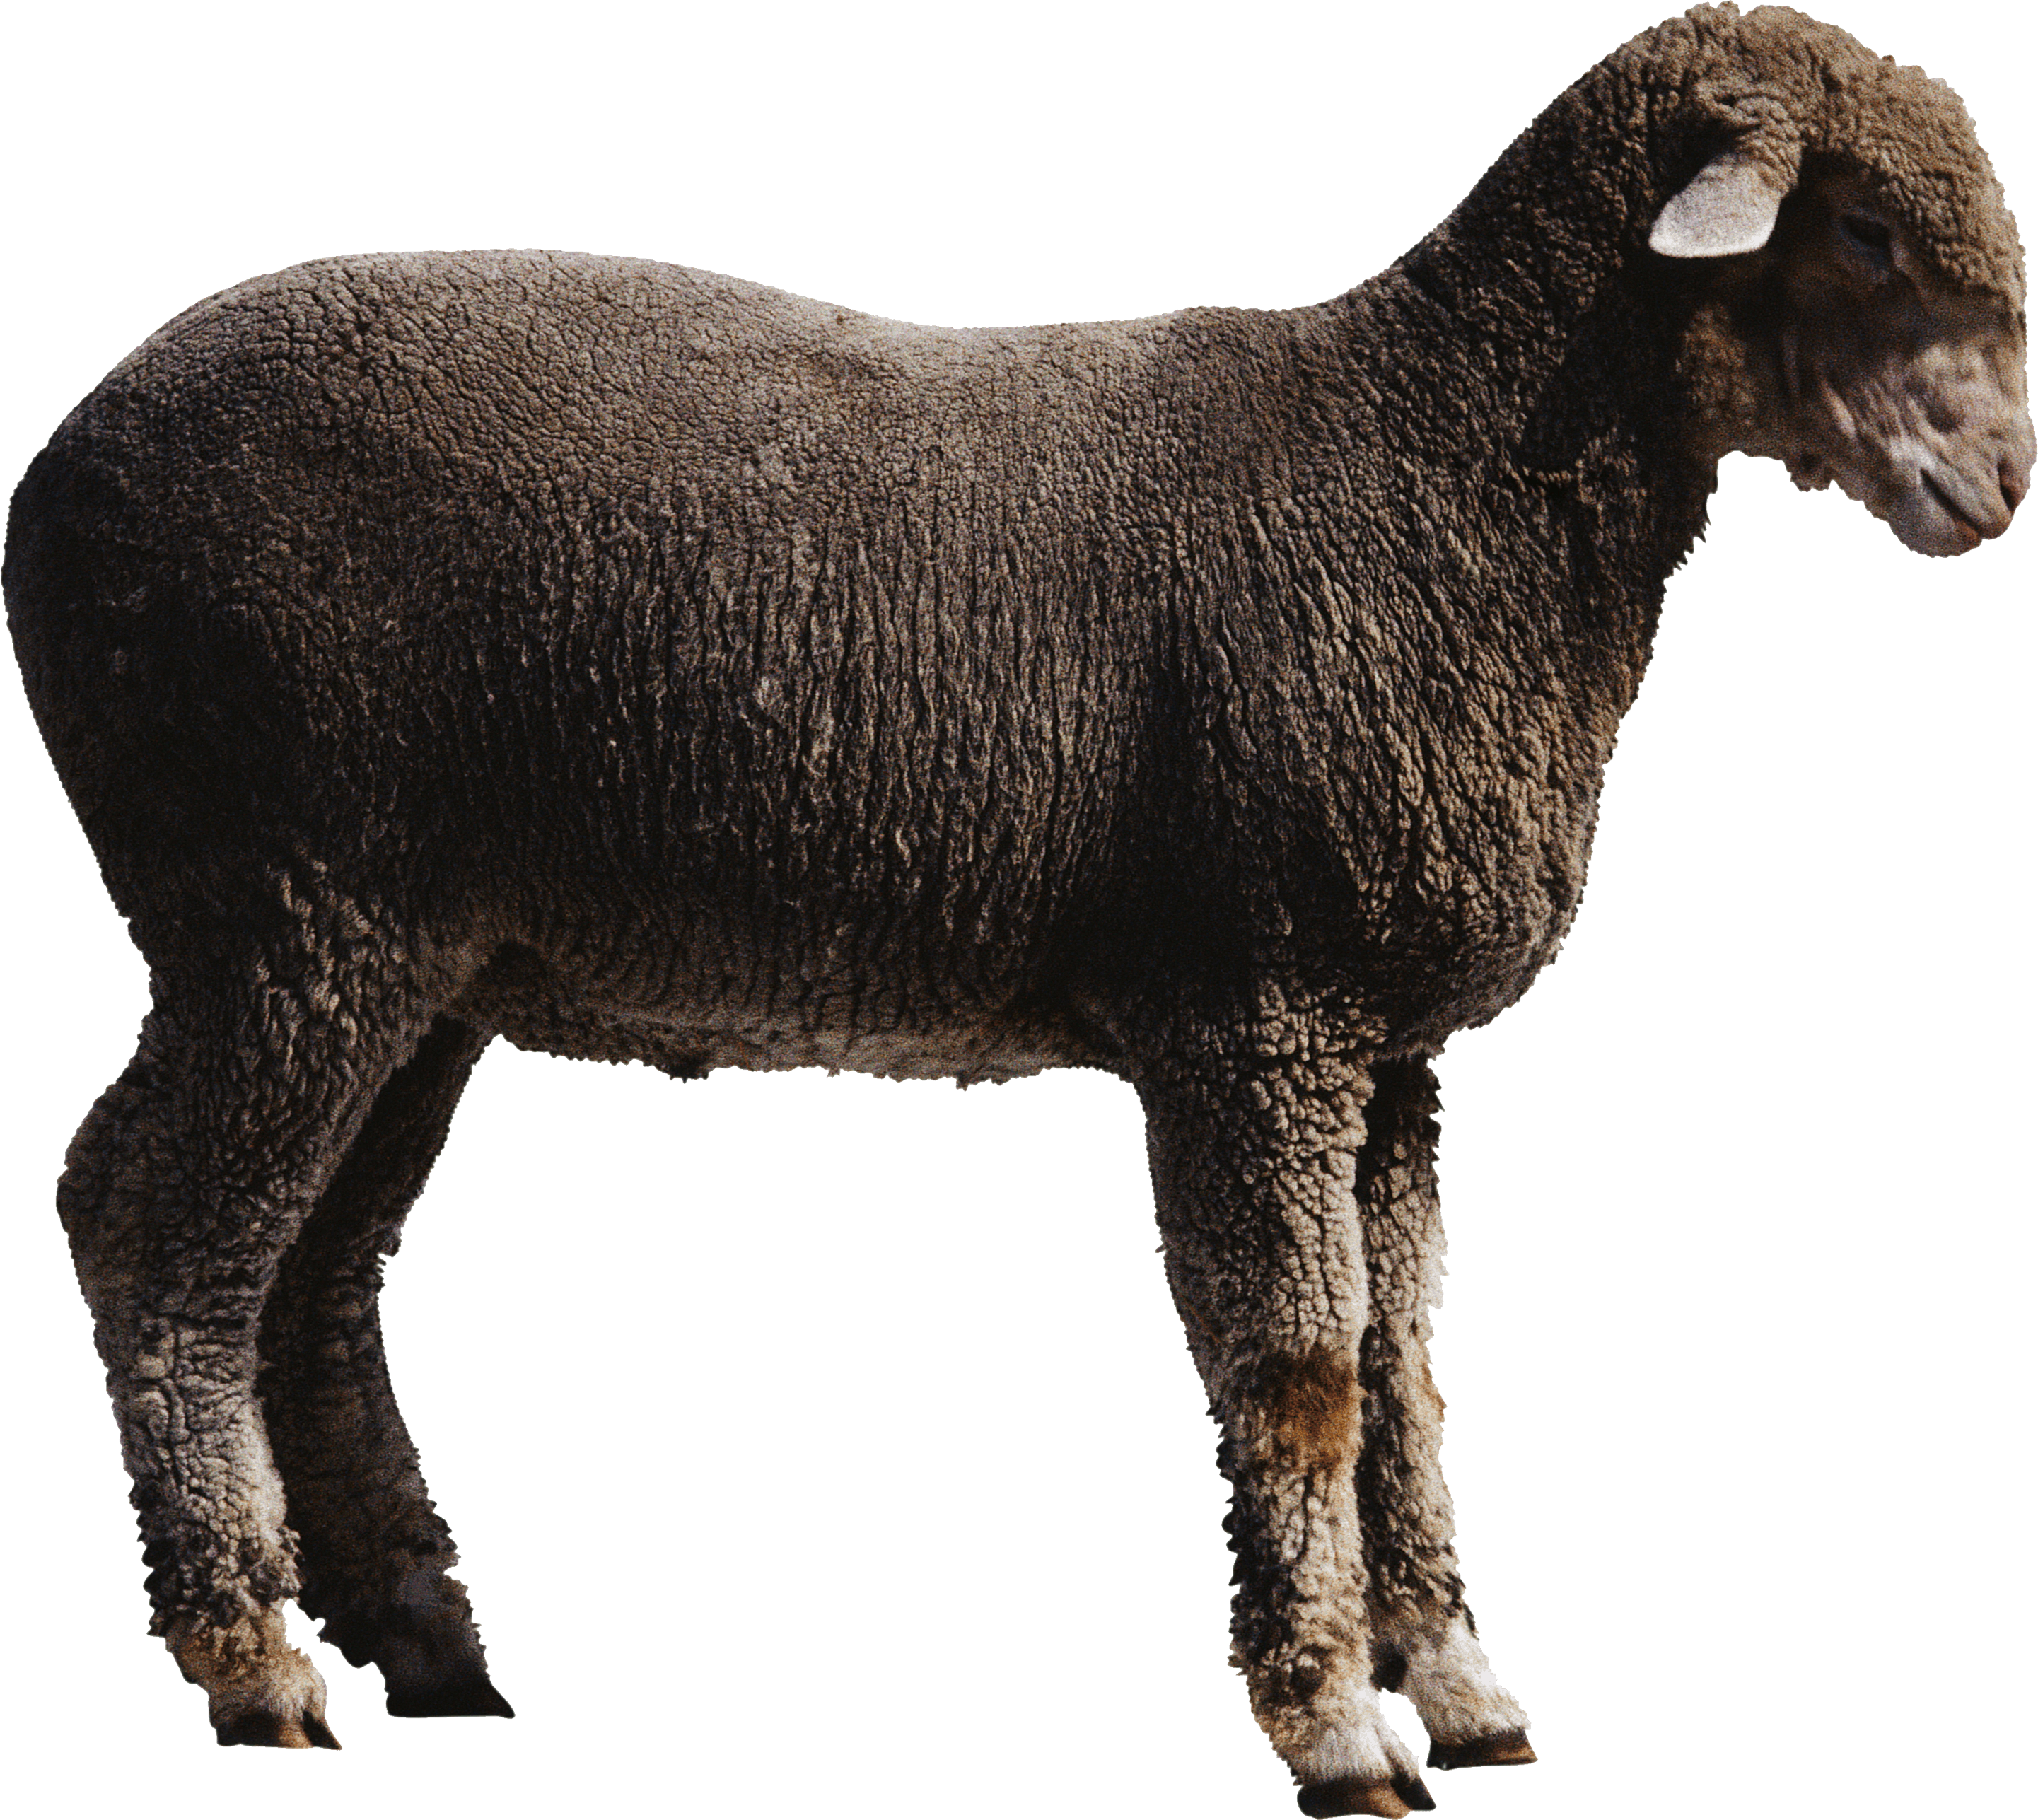 Sheep Png Image PNG Image